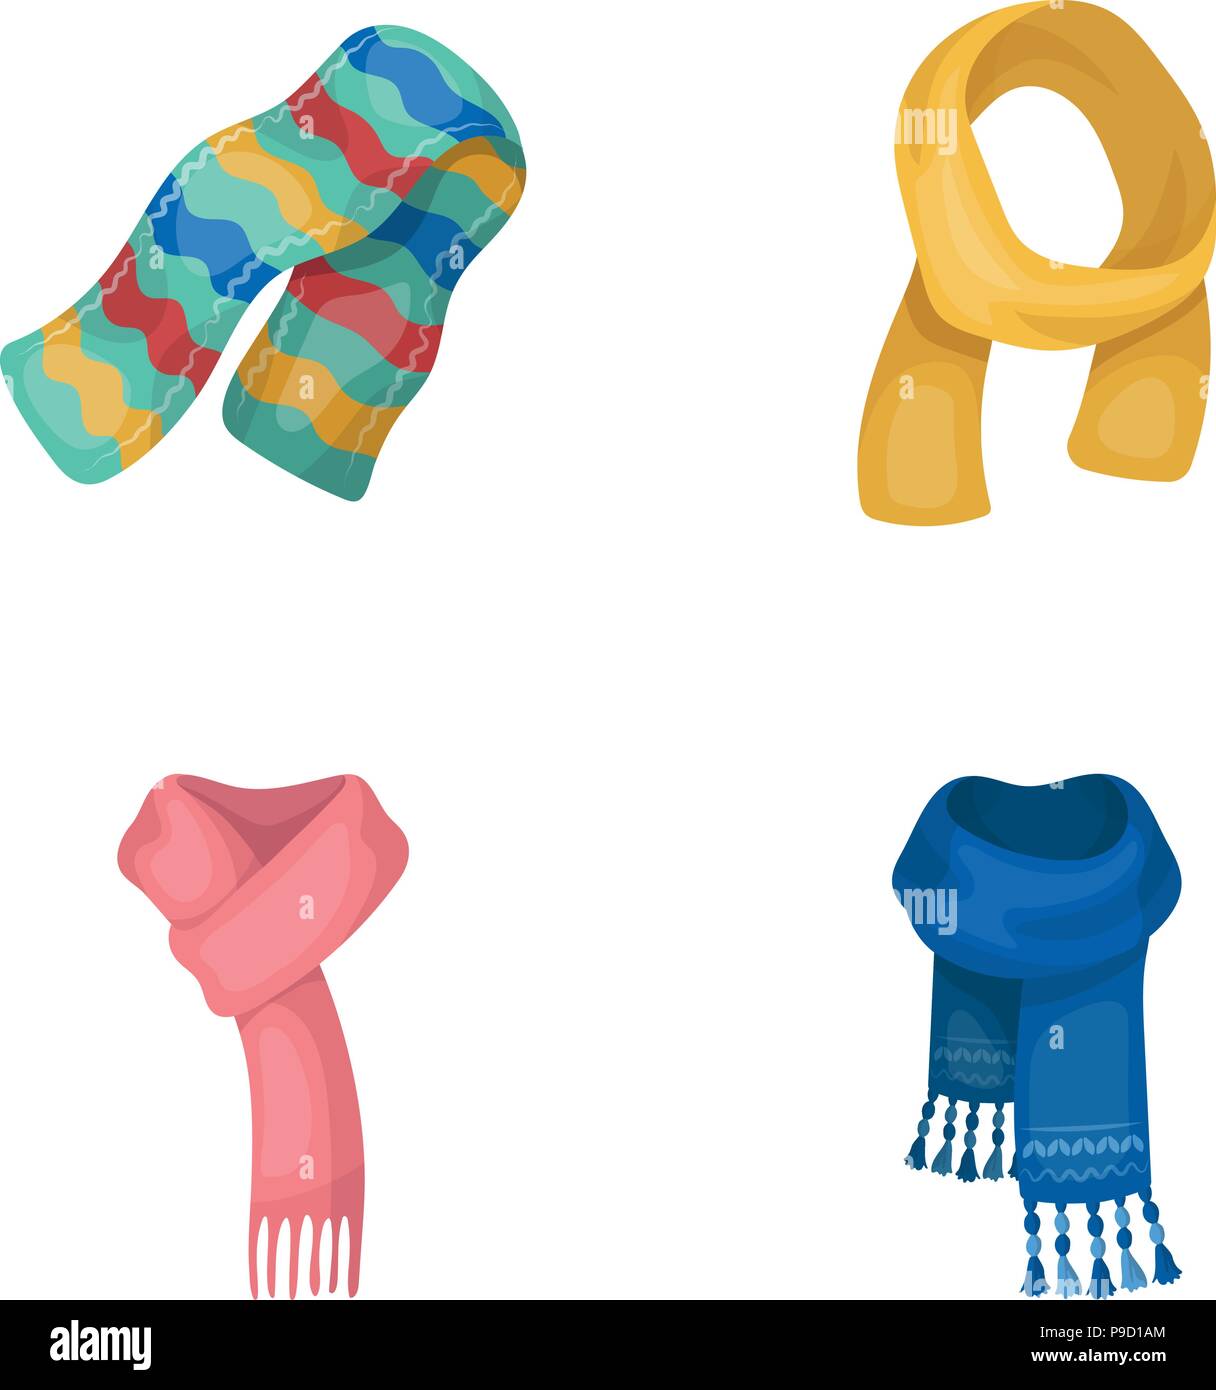 Verschiedene Arten von Schals, Tücher und Schals. Schals und Tücher set  Sammlung Icons im Comic-stil Vektor Symbol lieferbar Abbildung  Stock-Vektorgrafik - Alamy